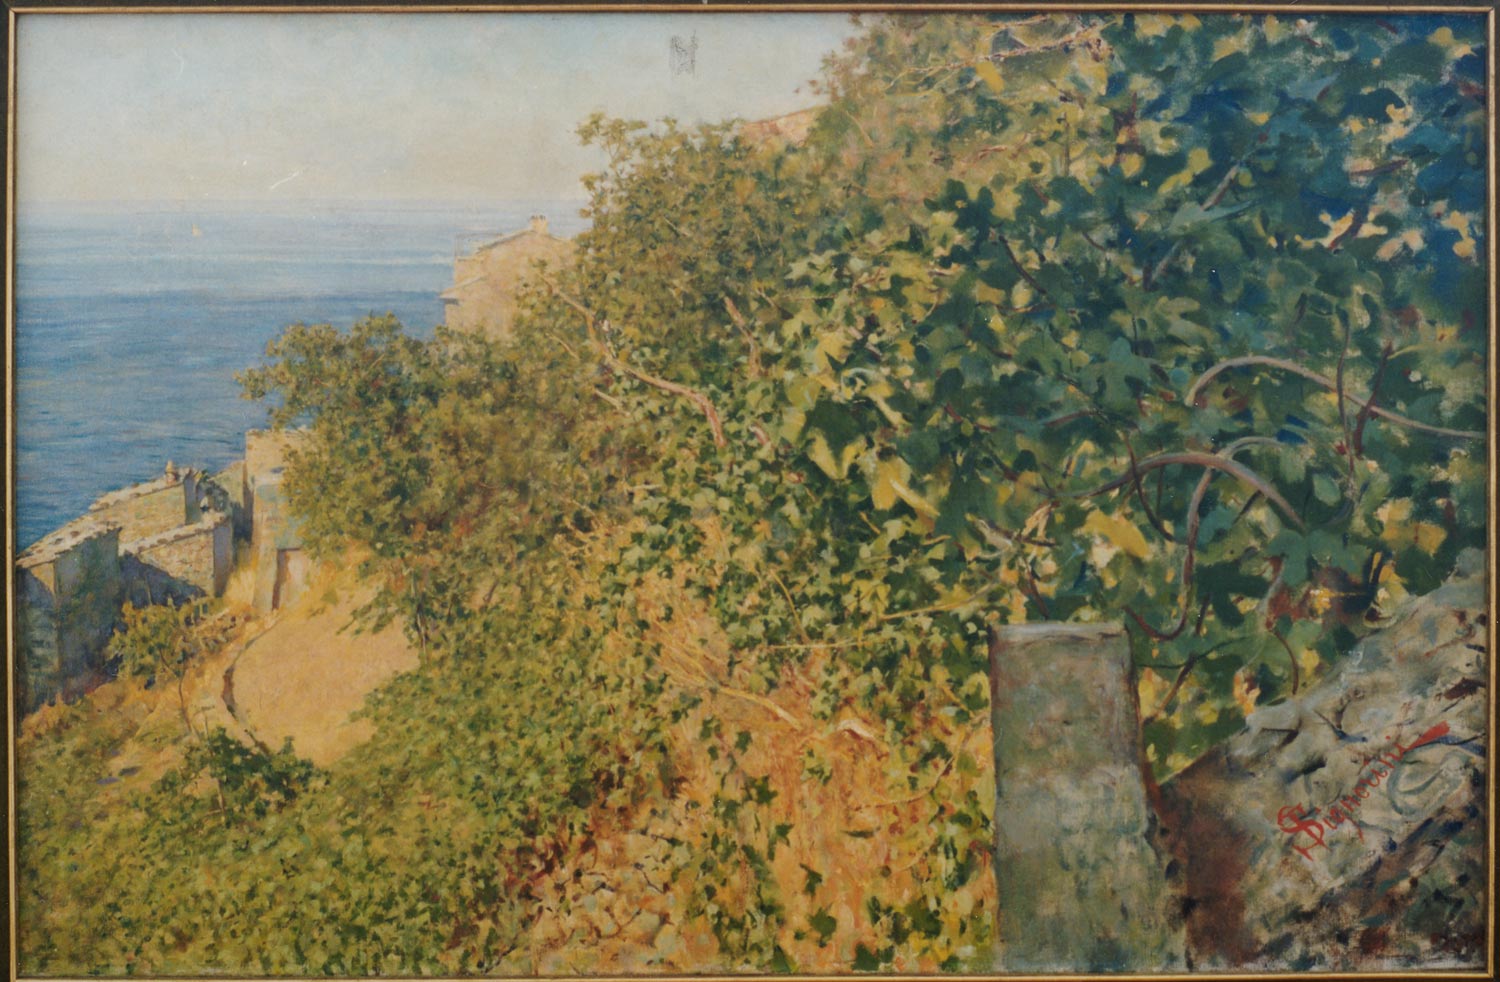 Telemaco Signorini, Vegetazione a Riomaggiore (1894; olio su tela, 90 x 58 cm; Genova, Raccolte Frugone)